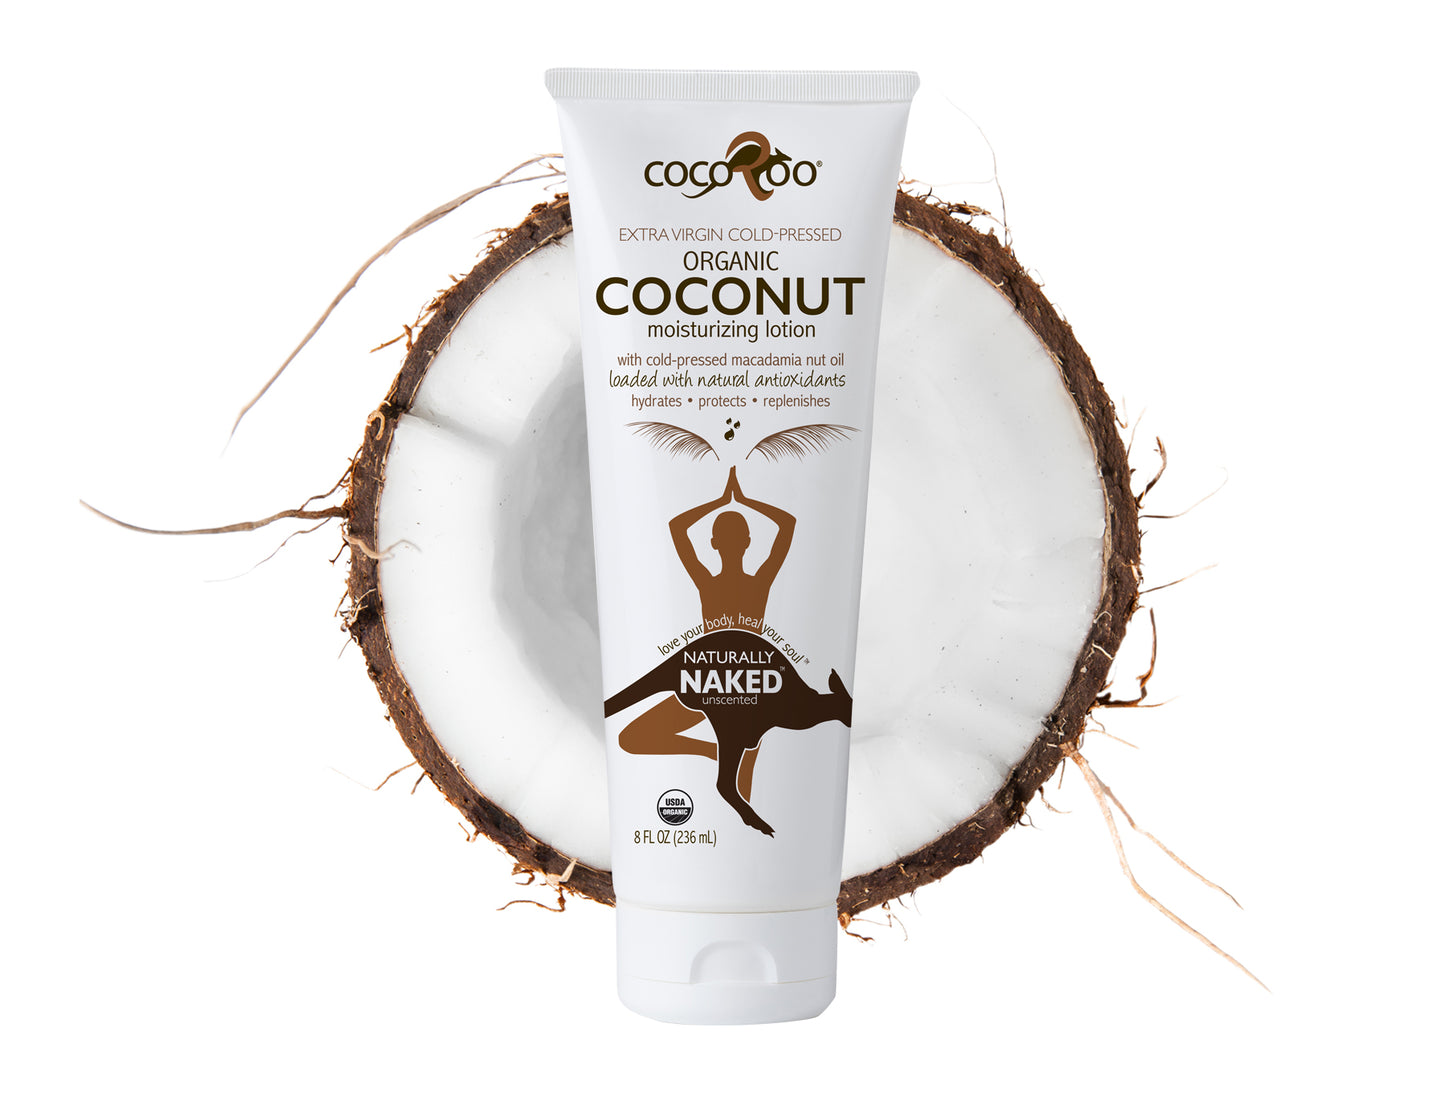 Total ReJAVAnation Coffee Scrub & Naturally Naked Coconut Oil Moisturizer